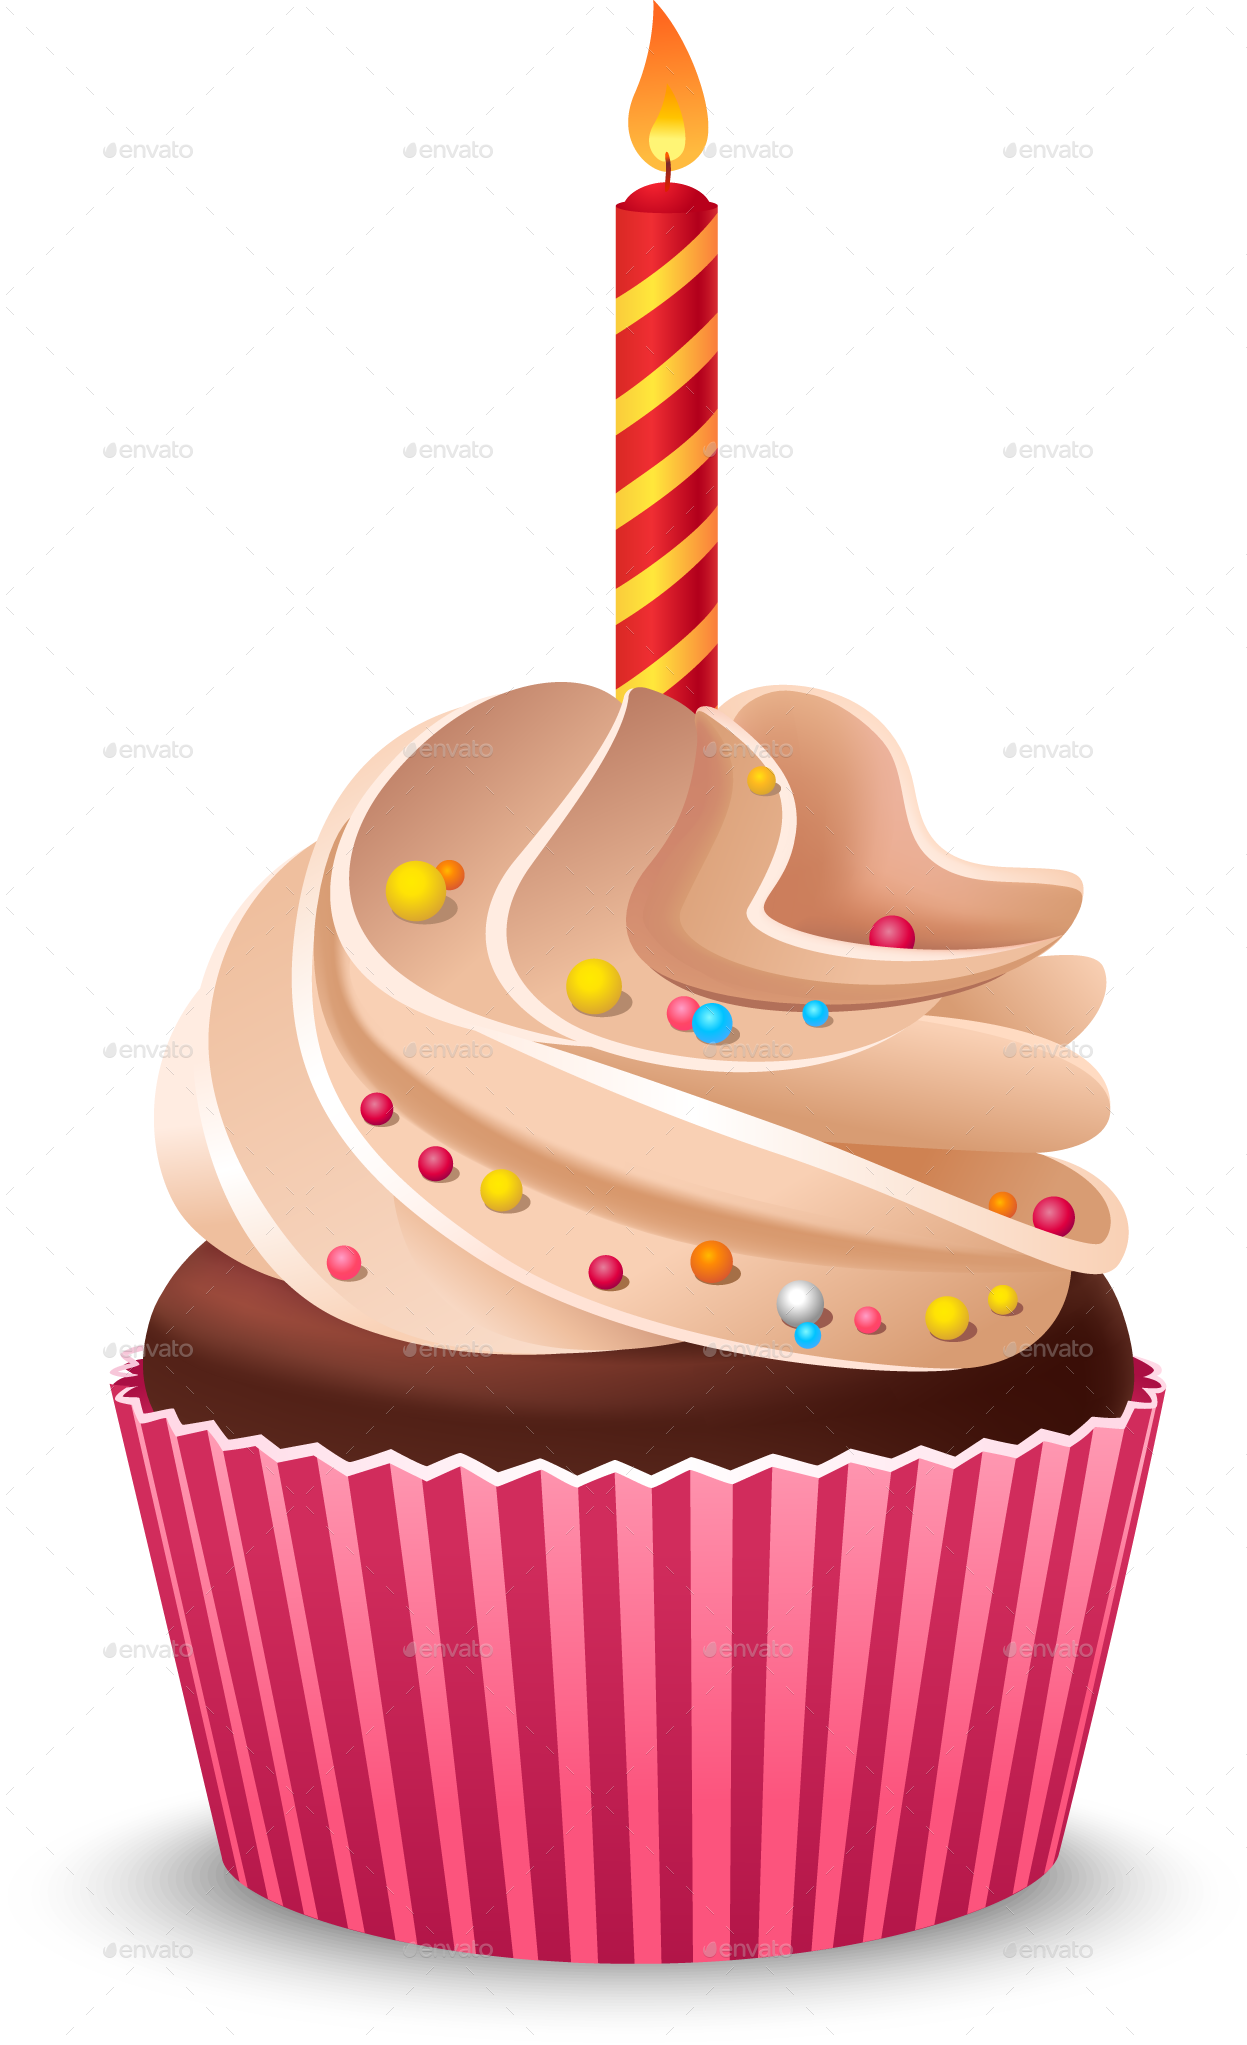 Cupcake Birthday cake Cream Muffin - birthday cake png download - 1247*